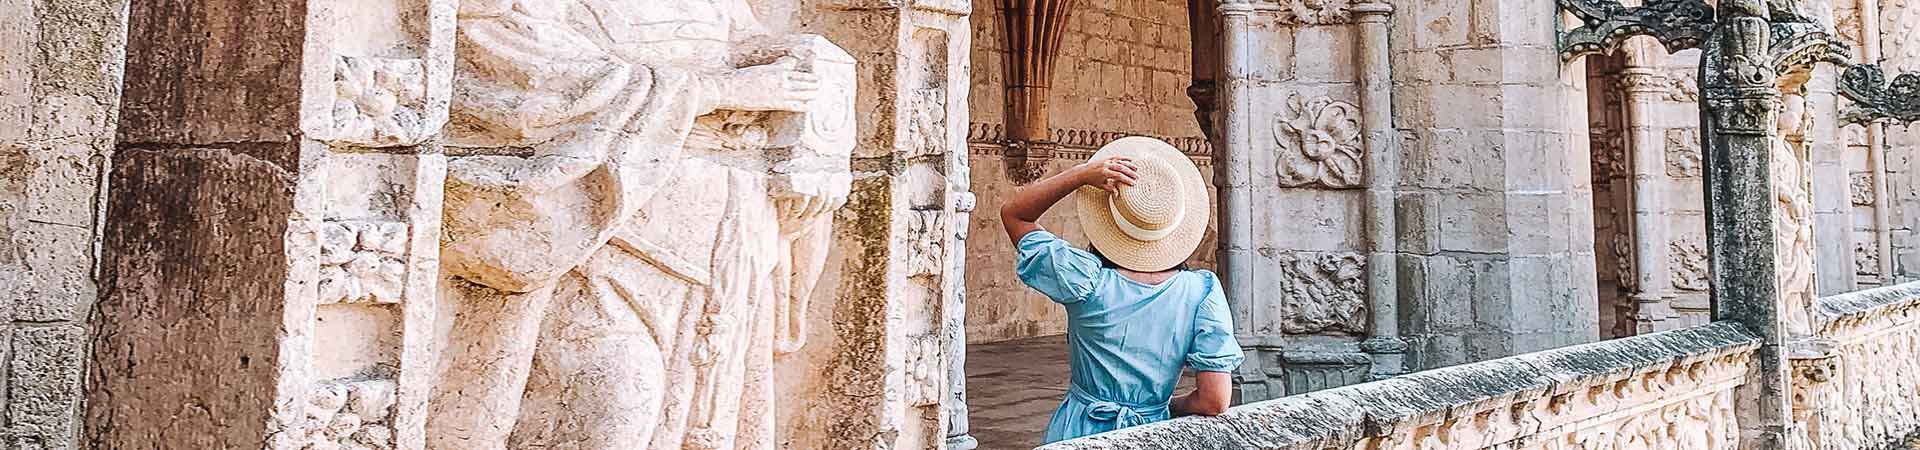 Imagem constituída por uma senhora de costas, a contemplar um monumento de pedra branca. A senhora tem cabelo preto comprido e está com um vestido azul e um chapéu de palha beje que segura com a sua mão esquerda. 